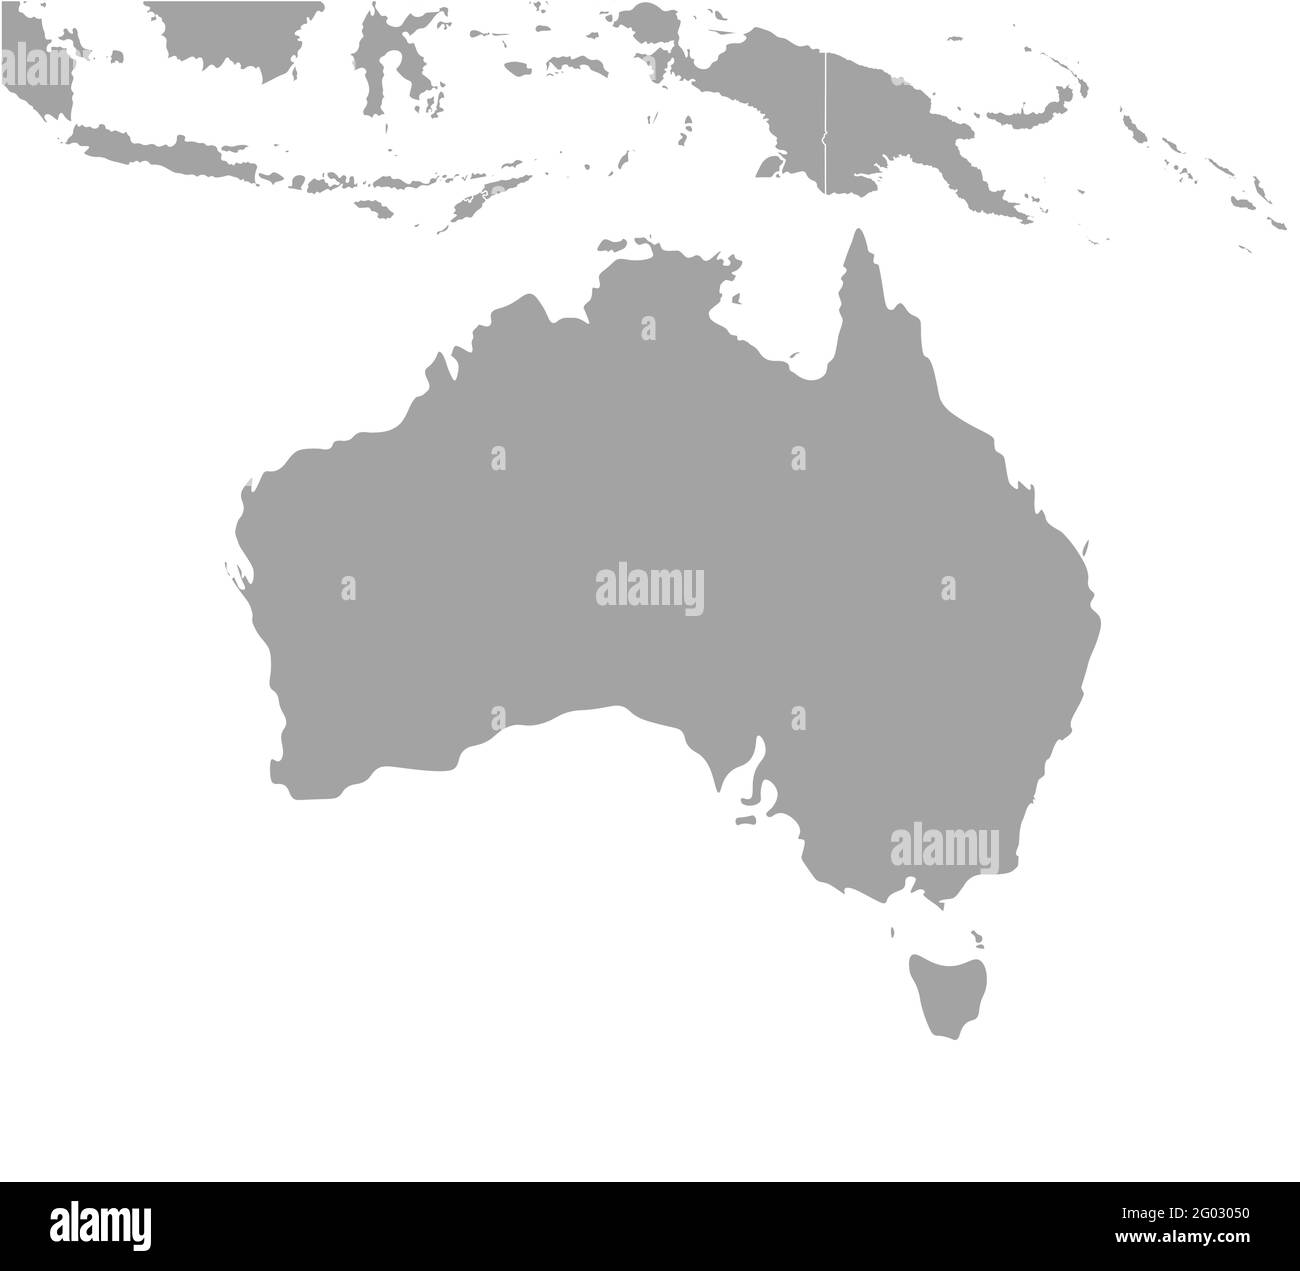 Illustration vectorielle moderne isolée. Carte géographique simplifiée de l'Australie et des régions les plus proches (Indonésie, Papouasie-Nouvelle-Guinée, Îles Salomon Illustration de Vecteur